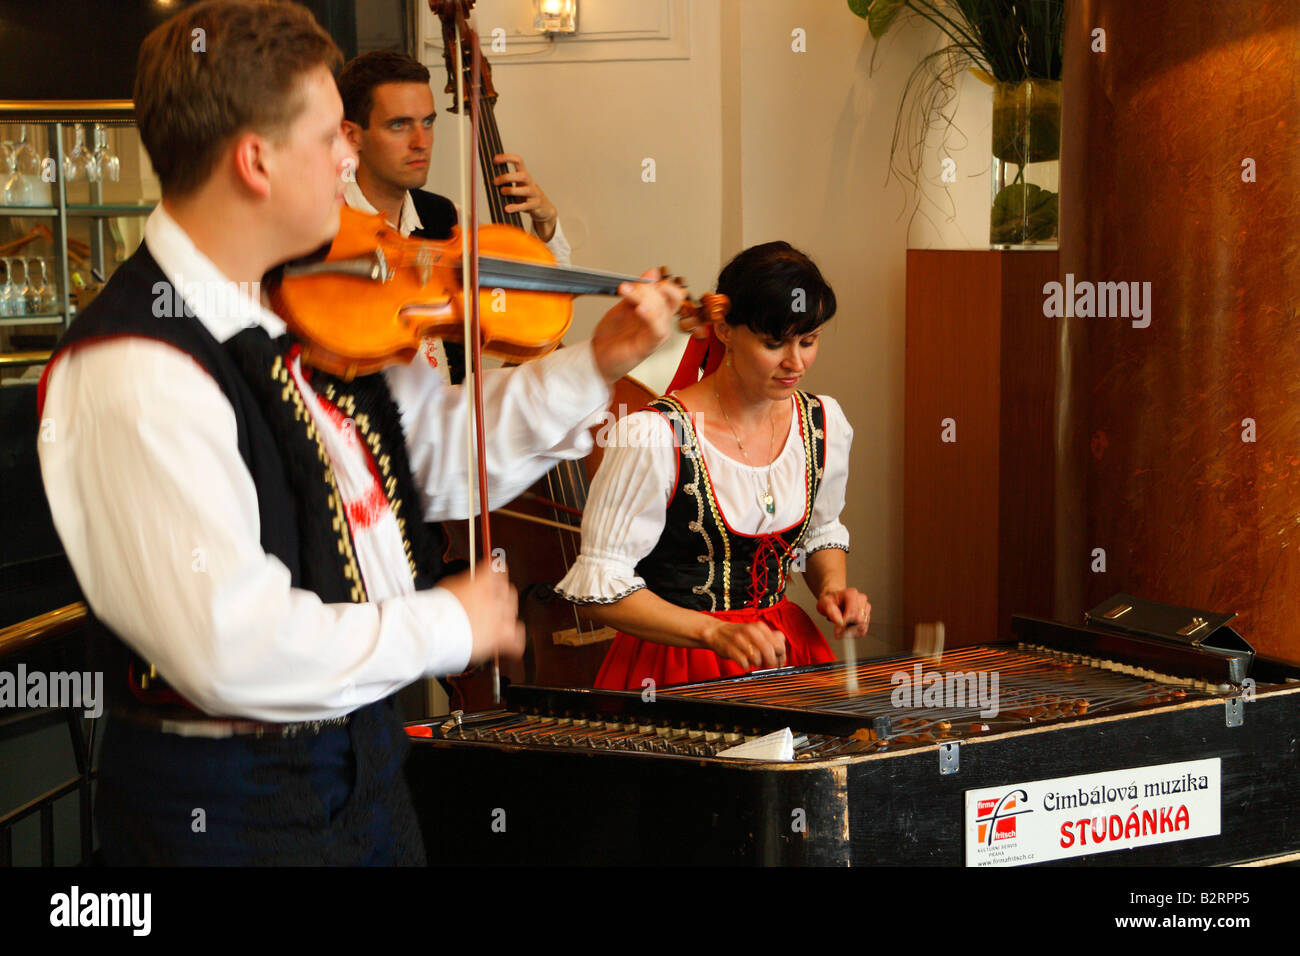 Le groupe jouant de la musique populaire tchèque pour les clients de la Pravda restaurant de luxe à Prague Banque D'Images